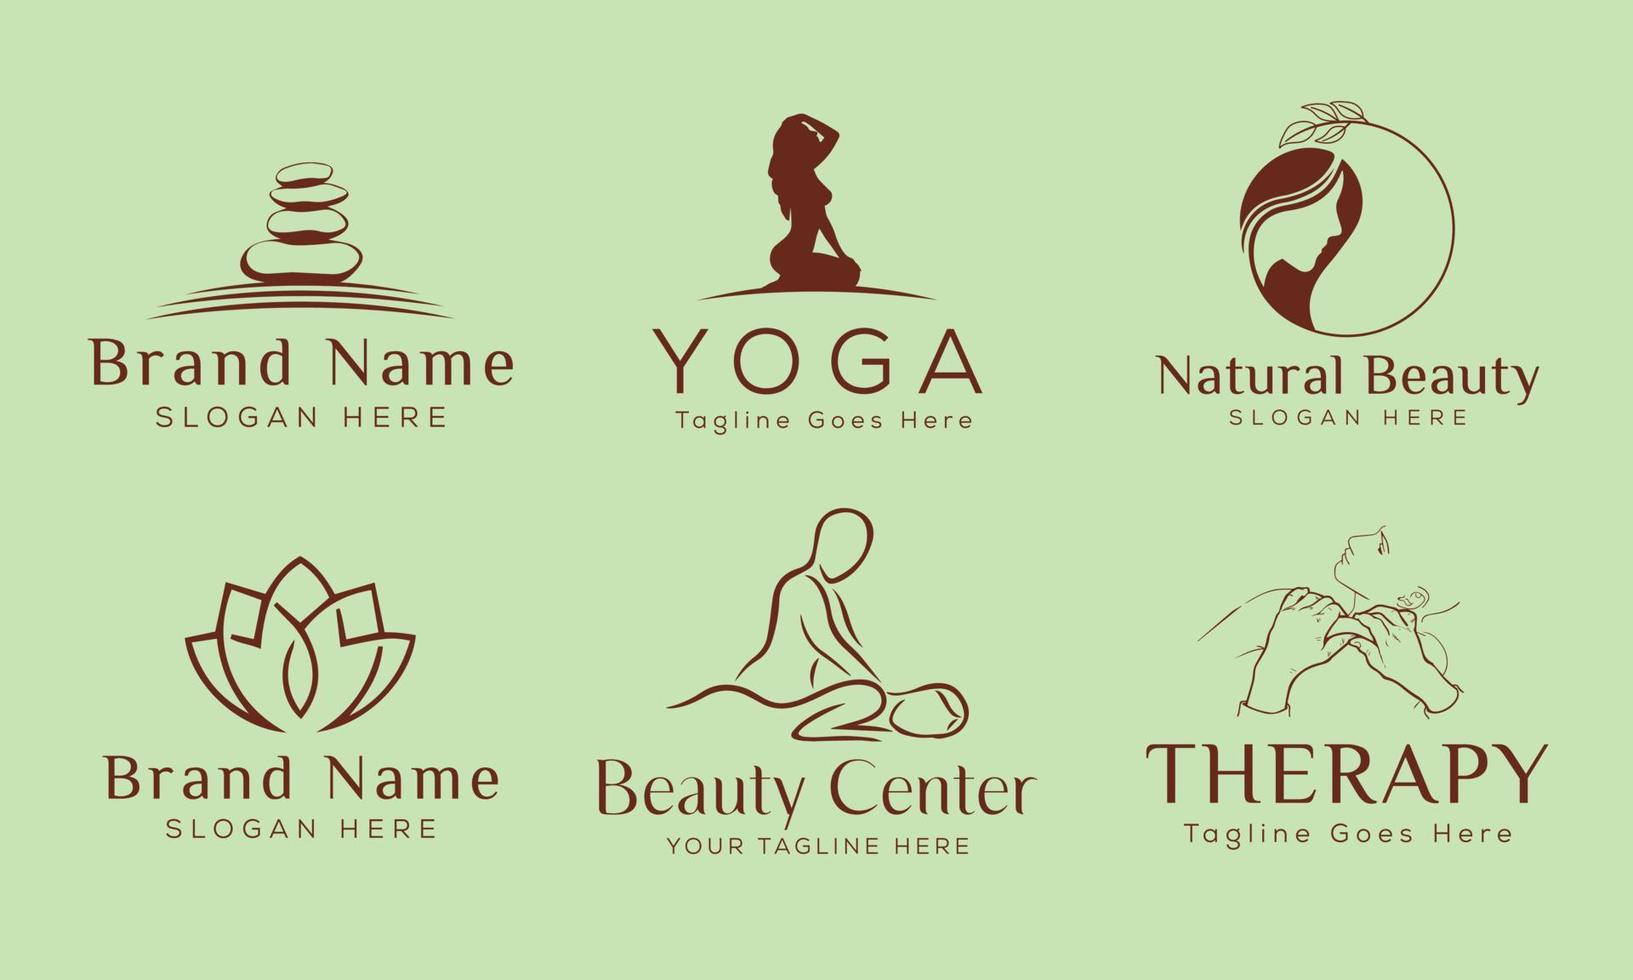 uppsättning spa element handritad logotyp med kropp och blad. logotyp för spa och skönhetssalong, boutique, massageterapi, ekologisk butik, avkoppling, kvinnans kropp, yoga, kosmetikaaffär. gratis vektor